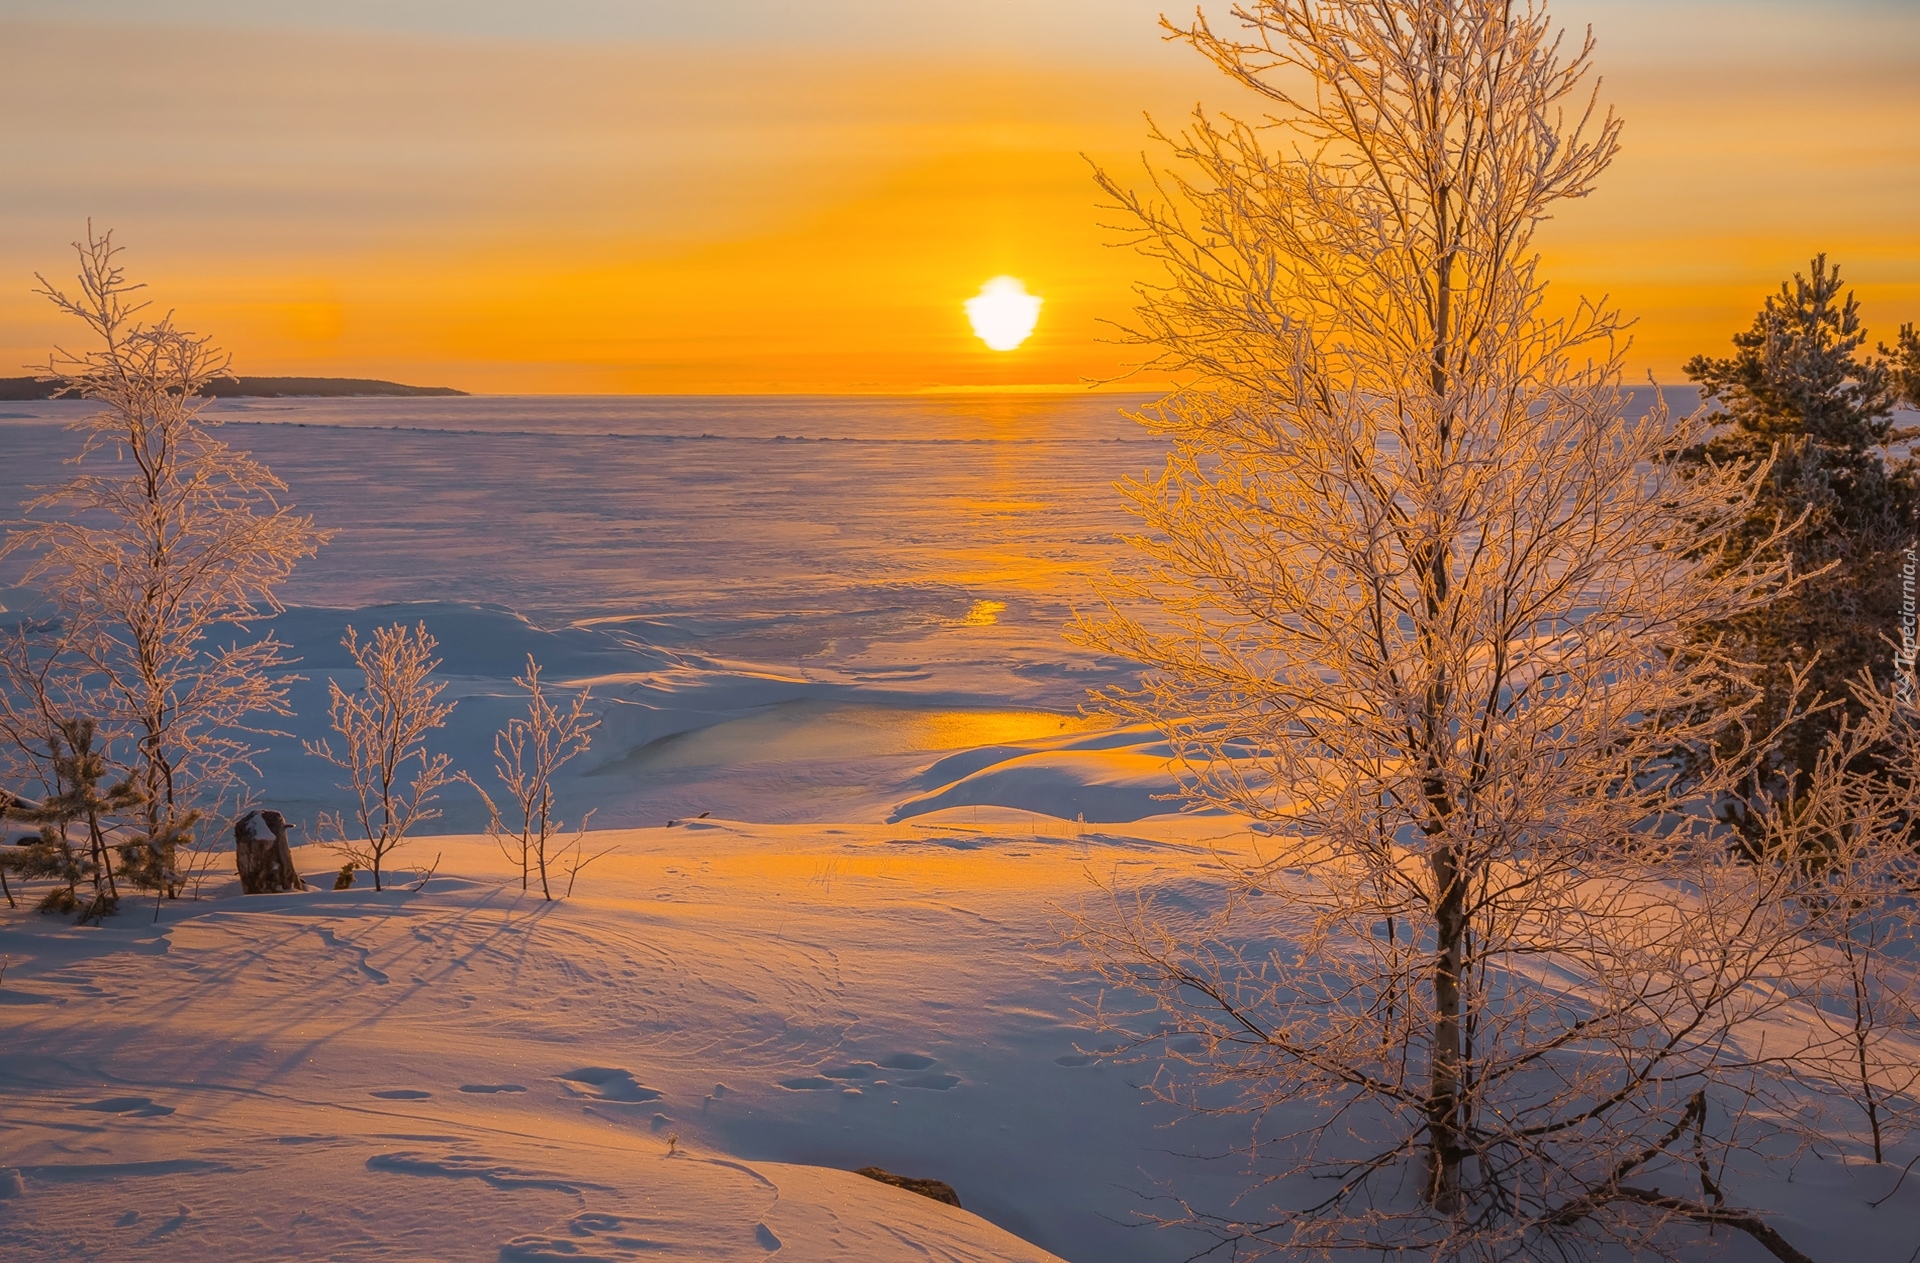 Zima, Drzewa, Roślinność, Wschód słońca, Jezioro Ładoga, Karelia, Rosja